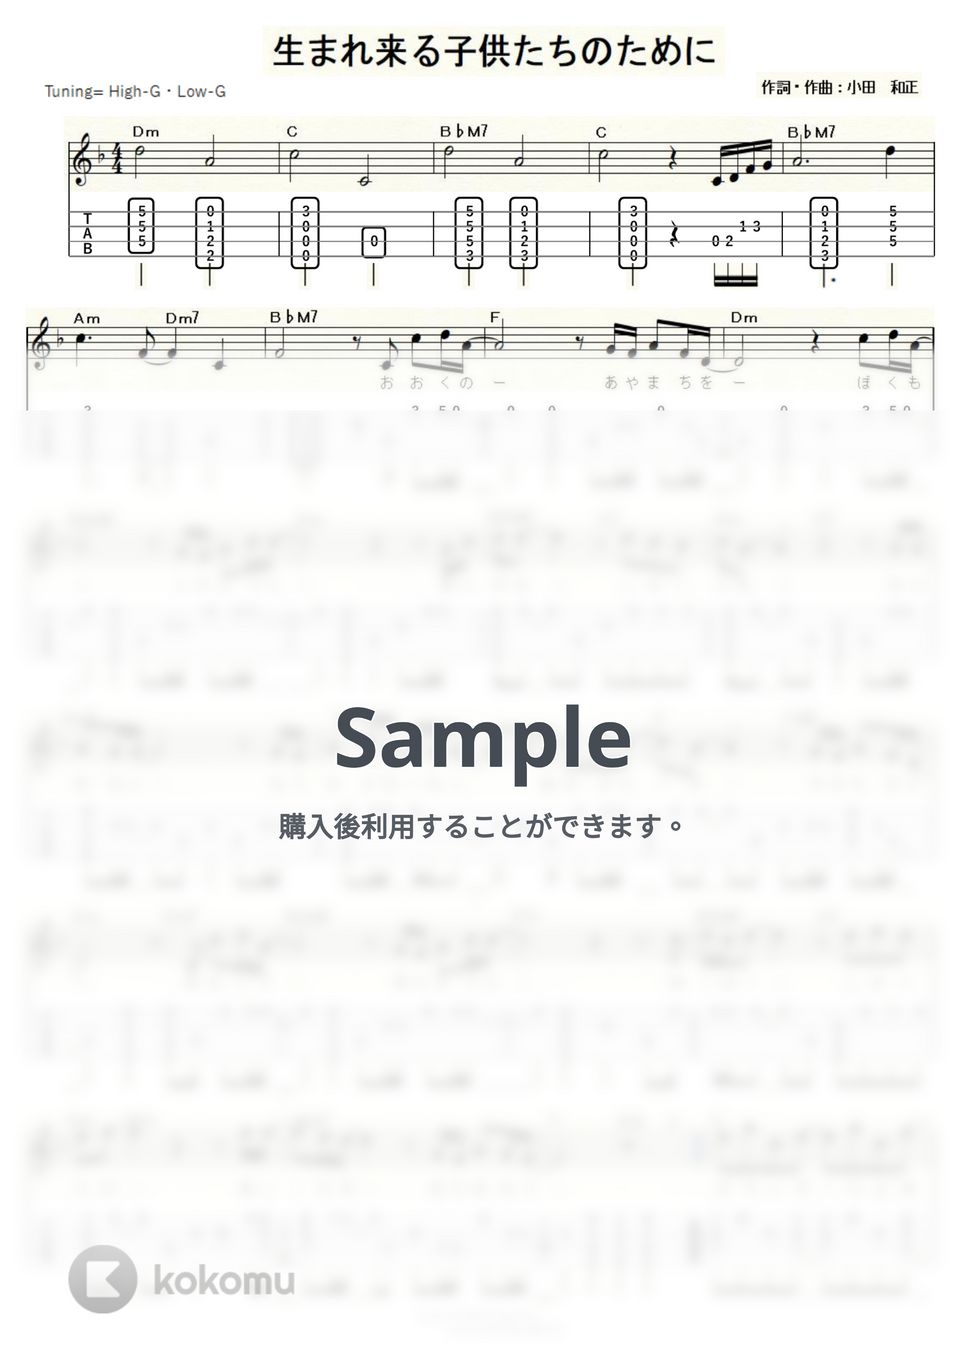 オフコース - 生まれ来る子供たちのために (ｳｸﾚﾚｿﾛ/High-G・Low-G/中級) by ukulelepapa